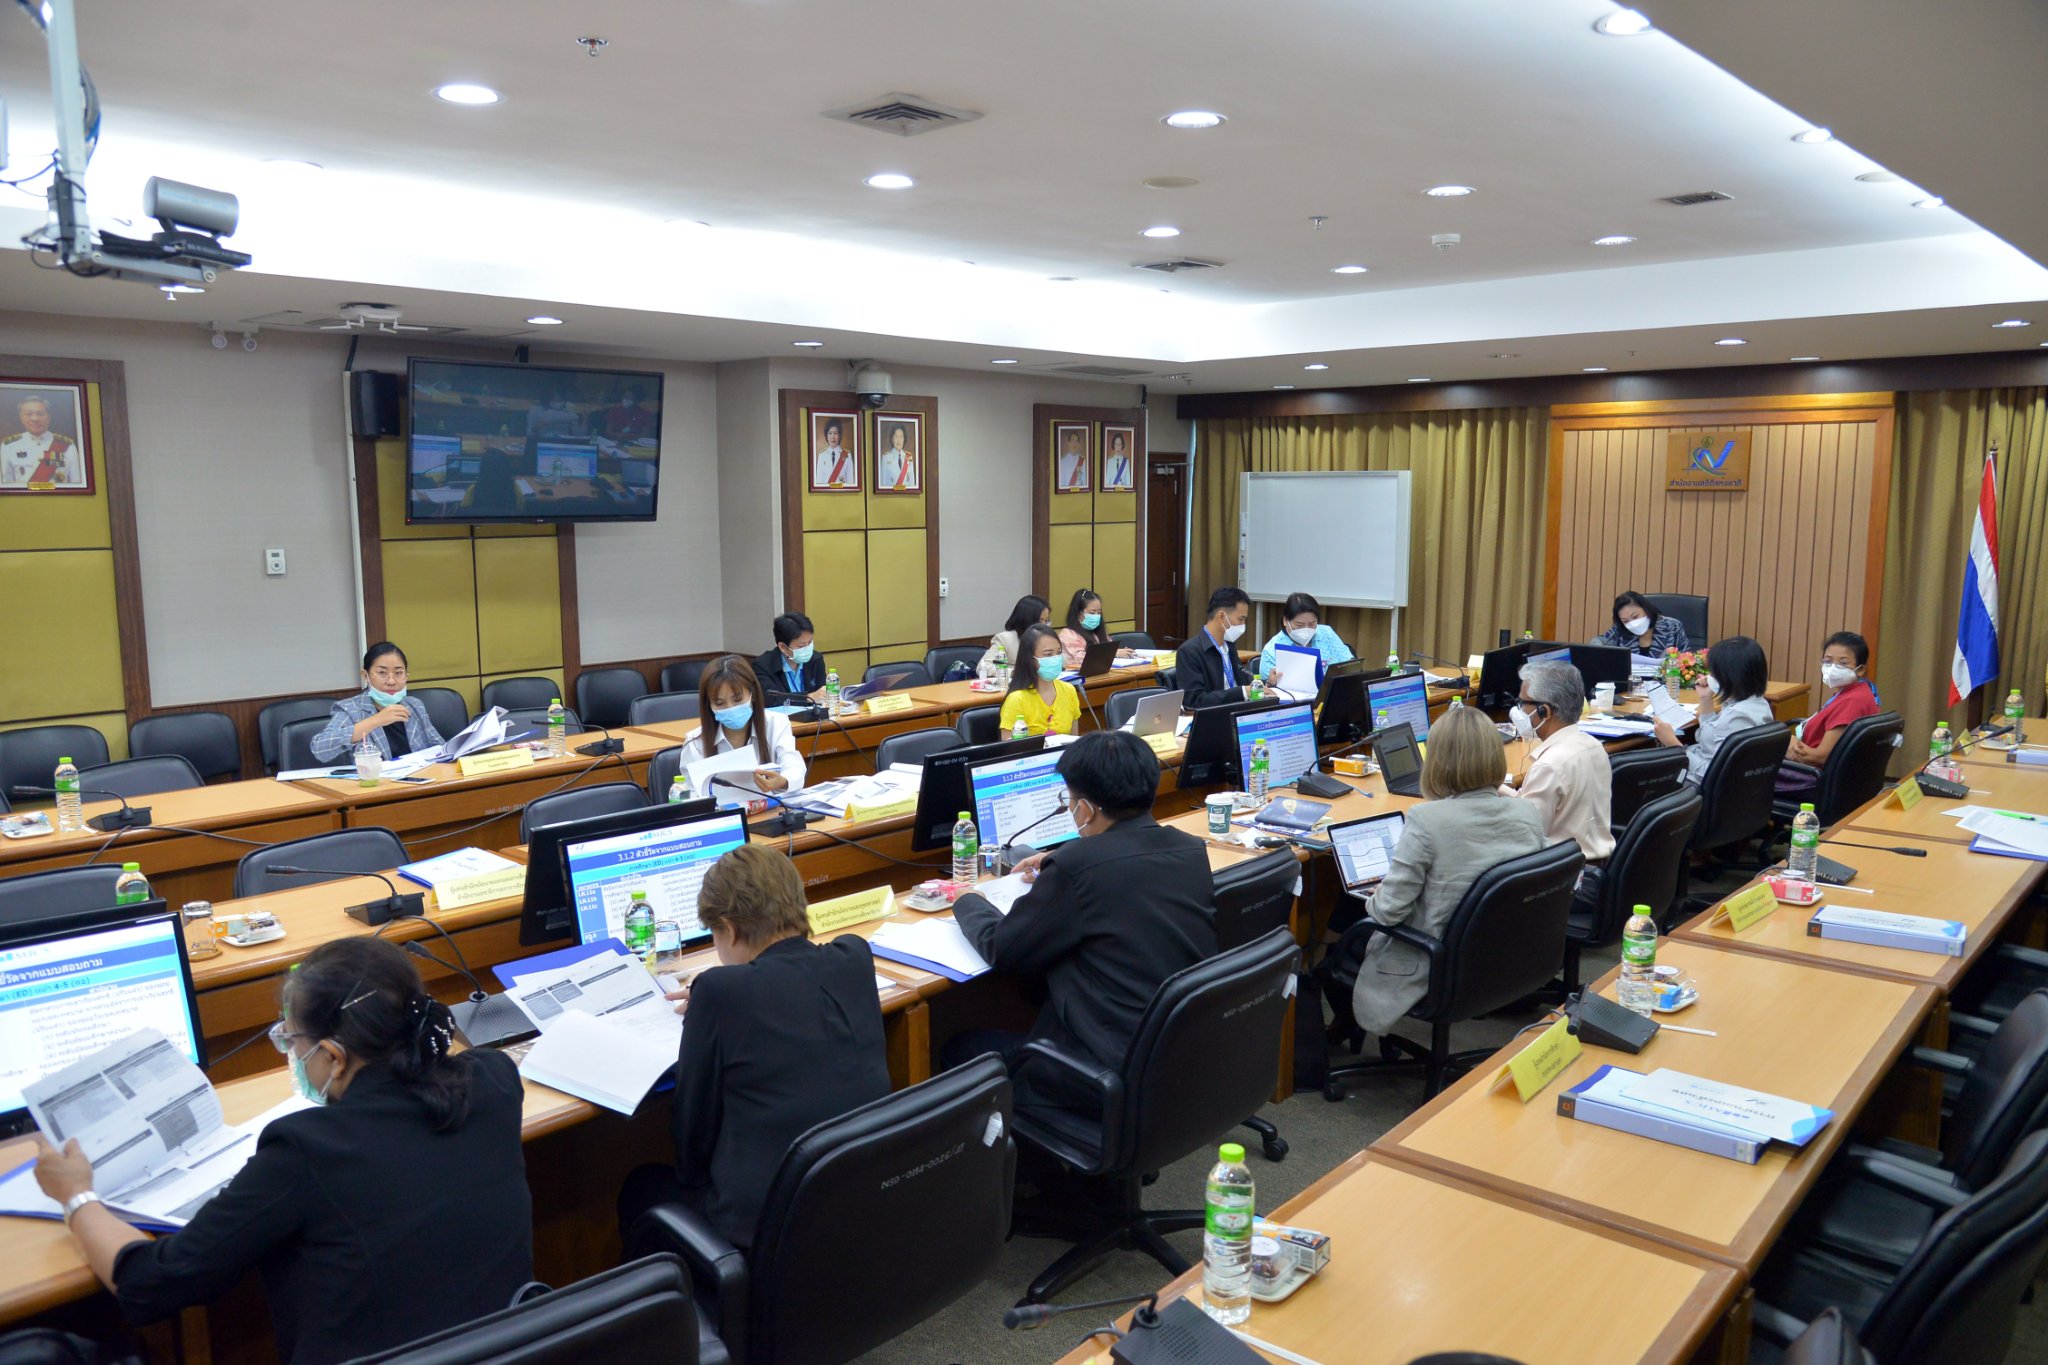 การประชุมคณะทำงานวิชาการฯ ด้านการศึกษา โครงการสำรวจสถานการณ์เด็กและสตรี ในประเทศไทย พ.ศ. 2565